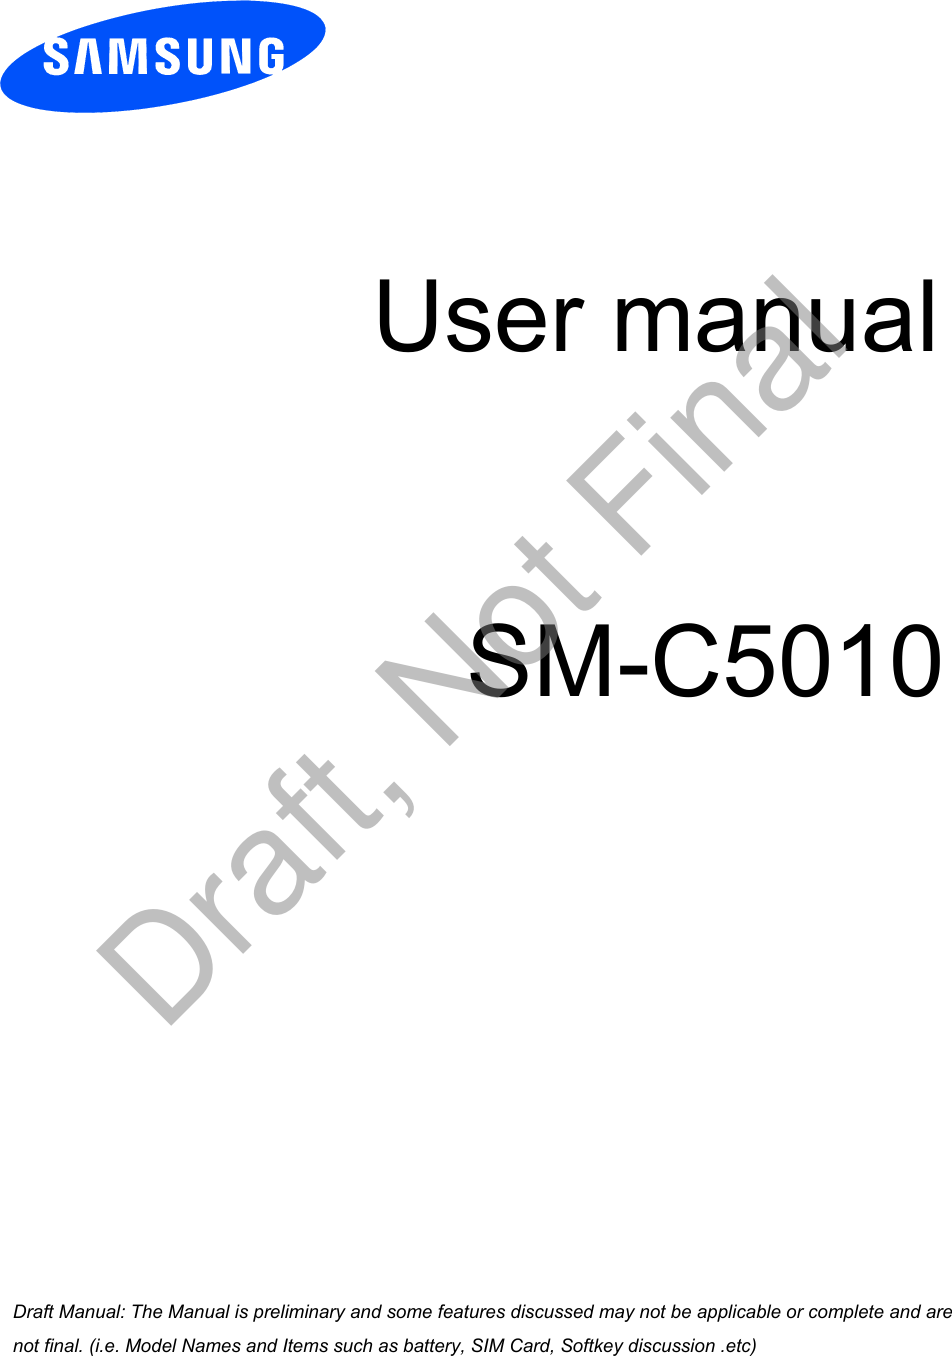 User manualSM-C5010a ana  ana  na and  a dd a n  aa   and a n na  d a and   a a  ad  dn Draft, Not Final